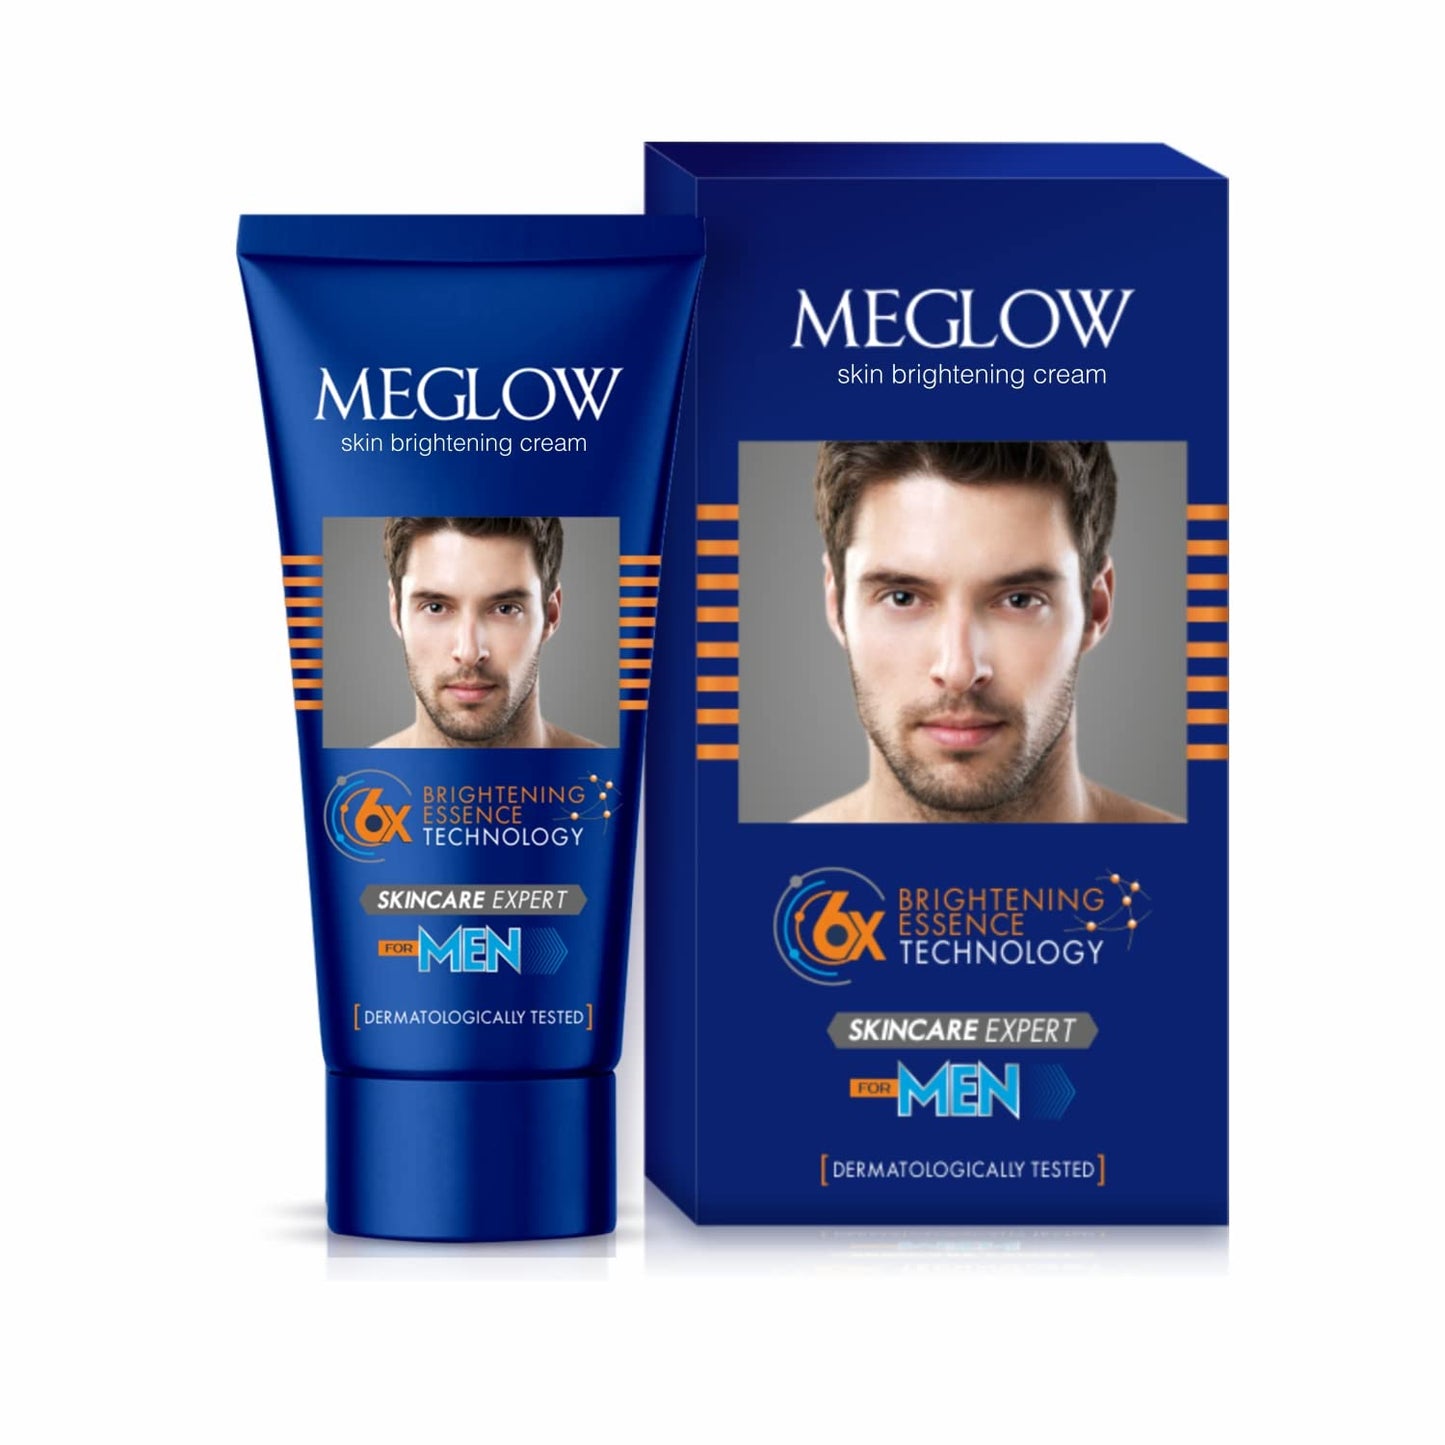 Meglow Premium Face Cream for Men 50g